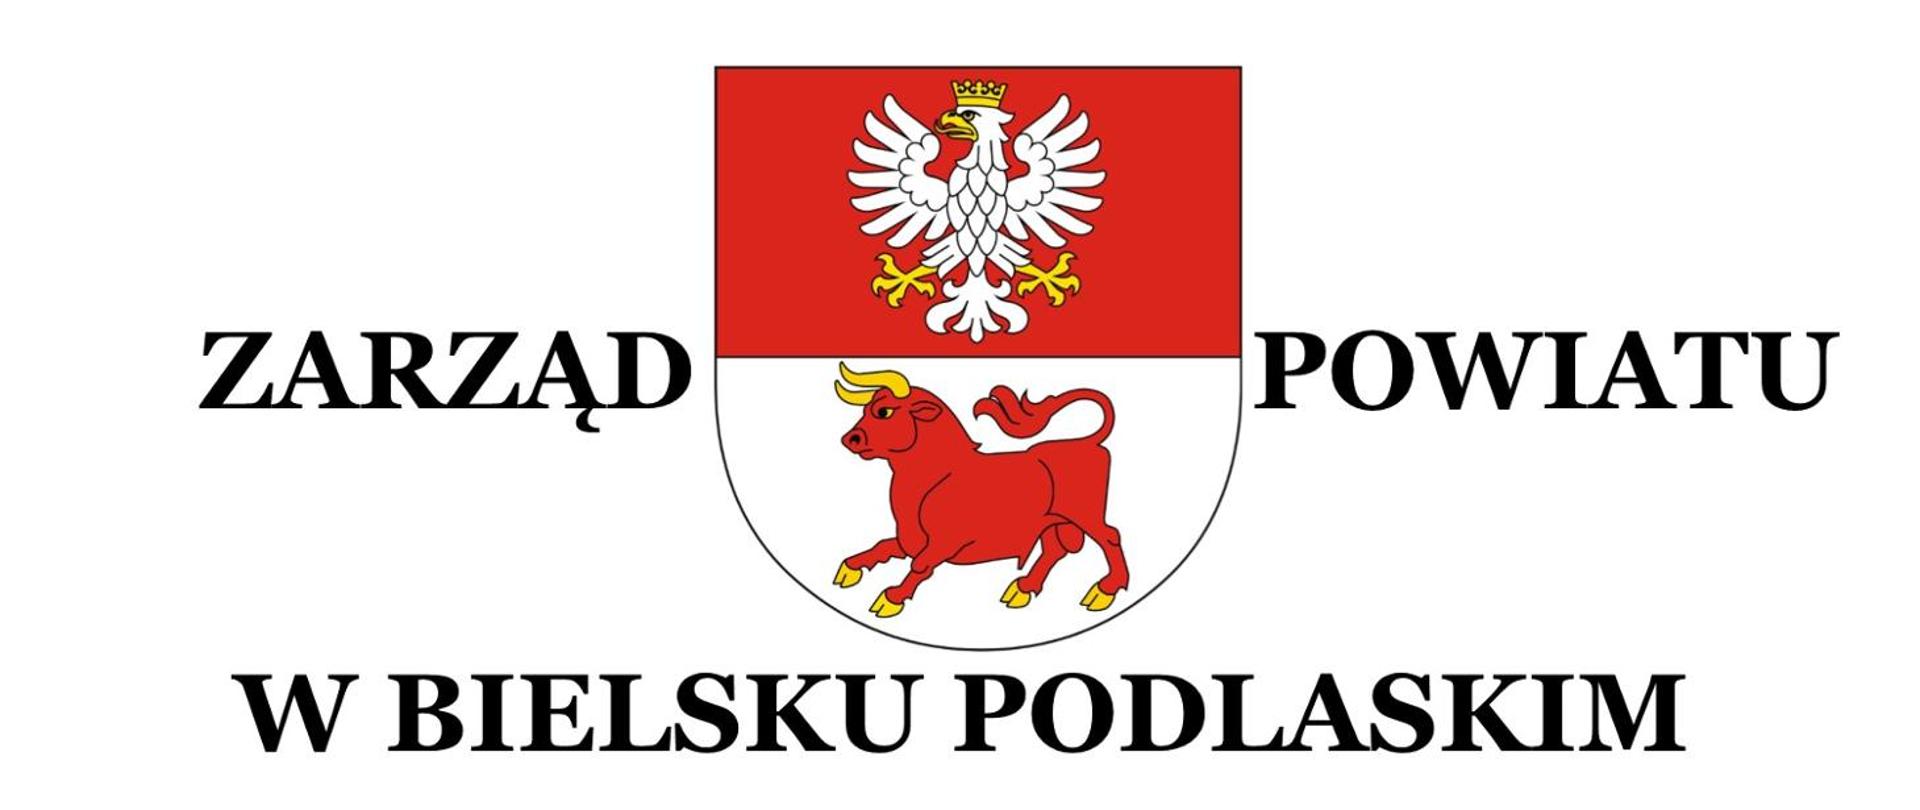 Zarząd Powiatu w Bielsku Podlaskim - herb